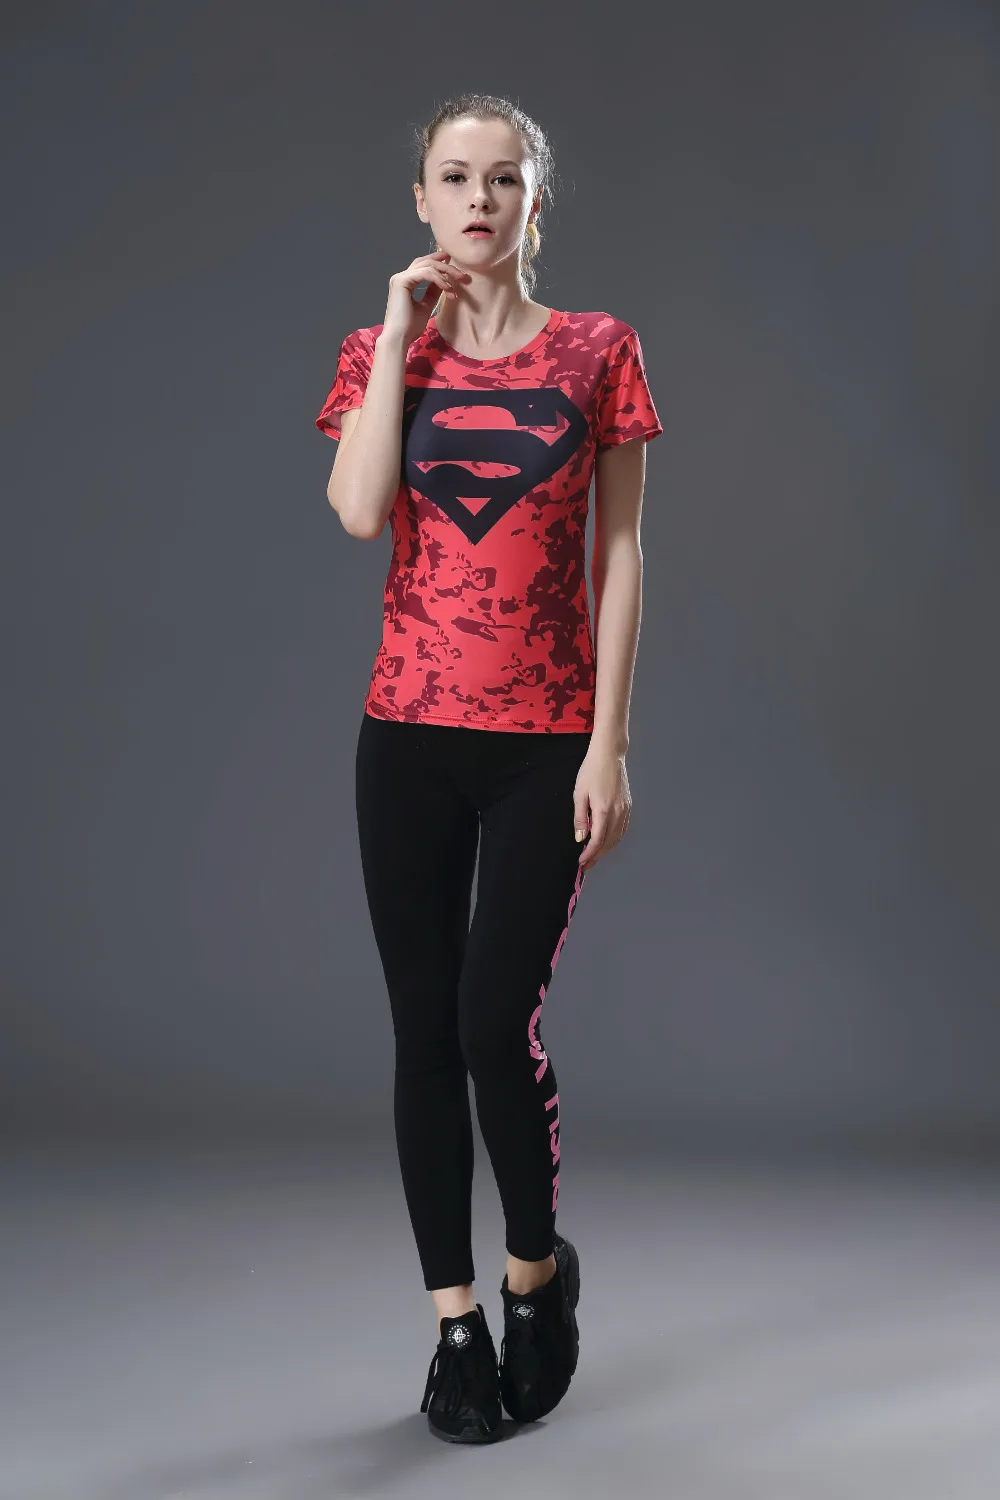 Marvel Женская Повседневная Супермен облегающий футболка с коротким рукавом летняя тонкая сухая быстросохнущая футболка Топы Плюс Размер дропшиппинг